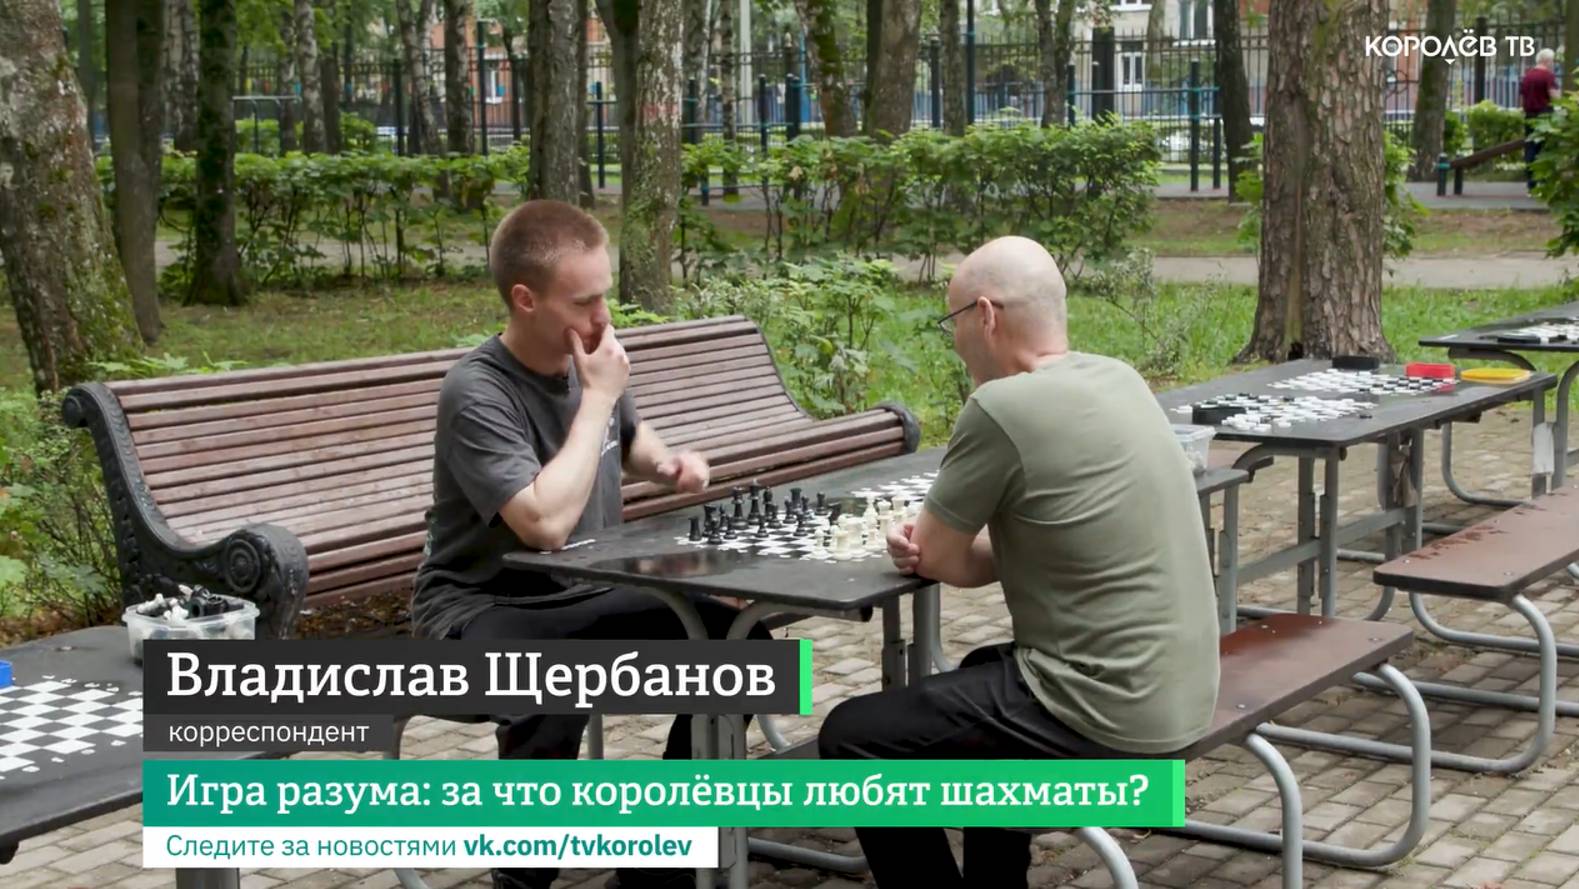 Игра разума: за что королёвцы любят шахматы?